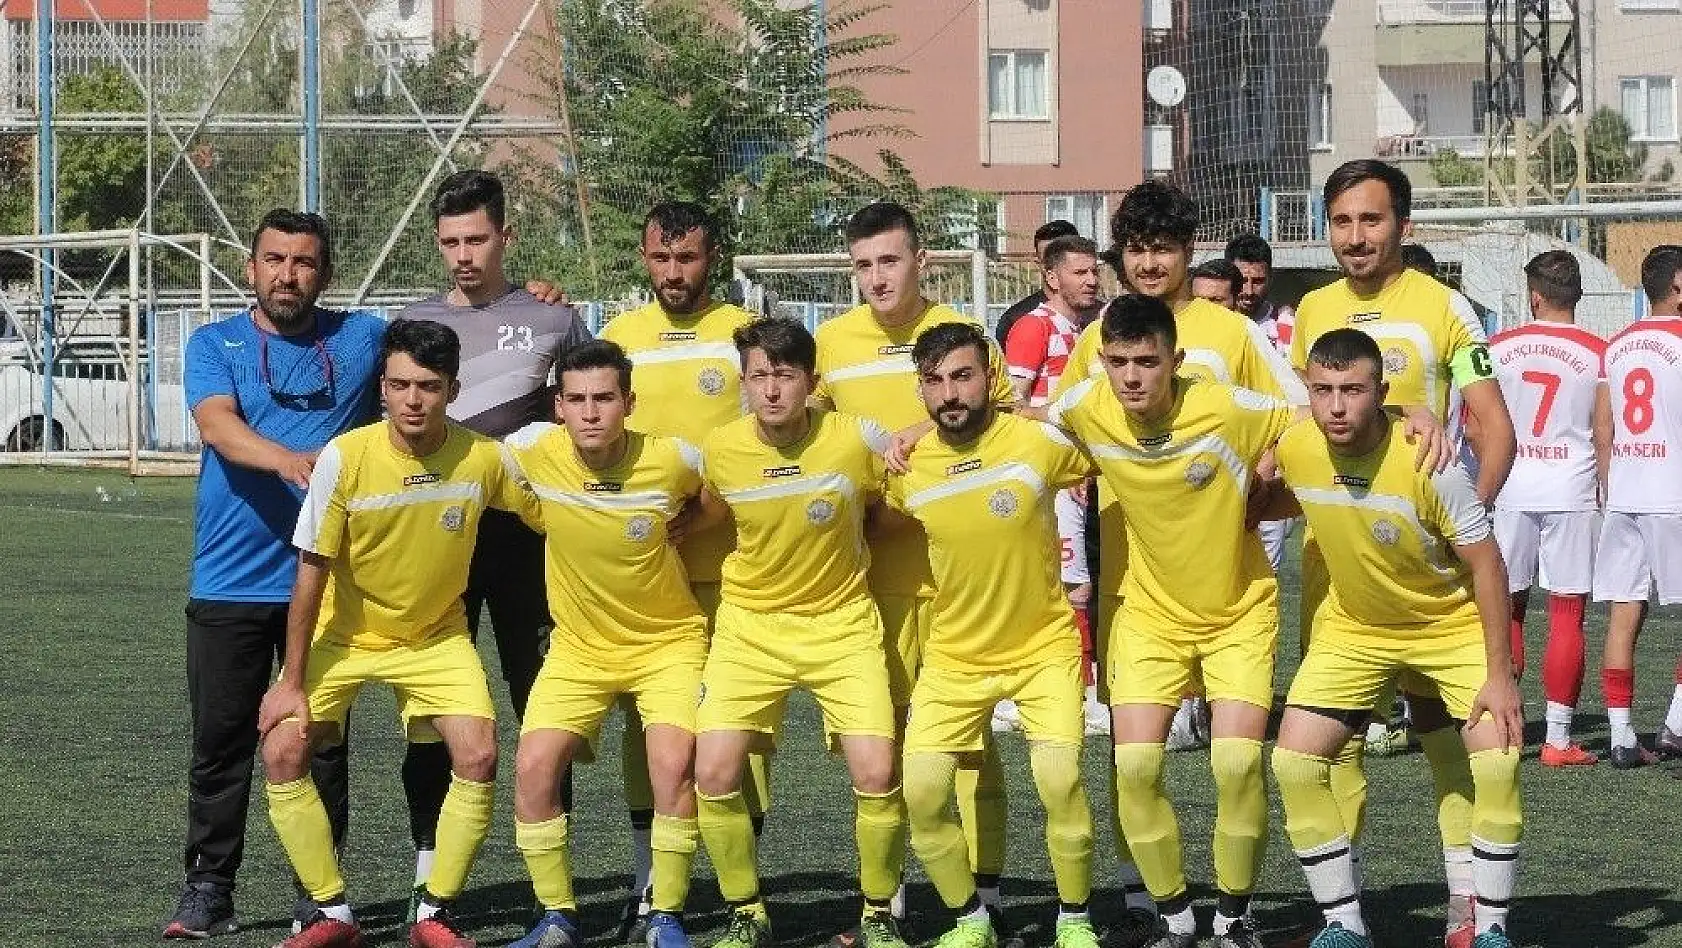 Kocasinan Şimşekspor 3 maçtır kaybetmiyor
